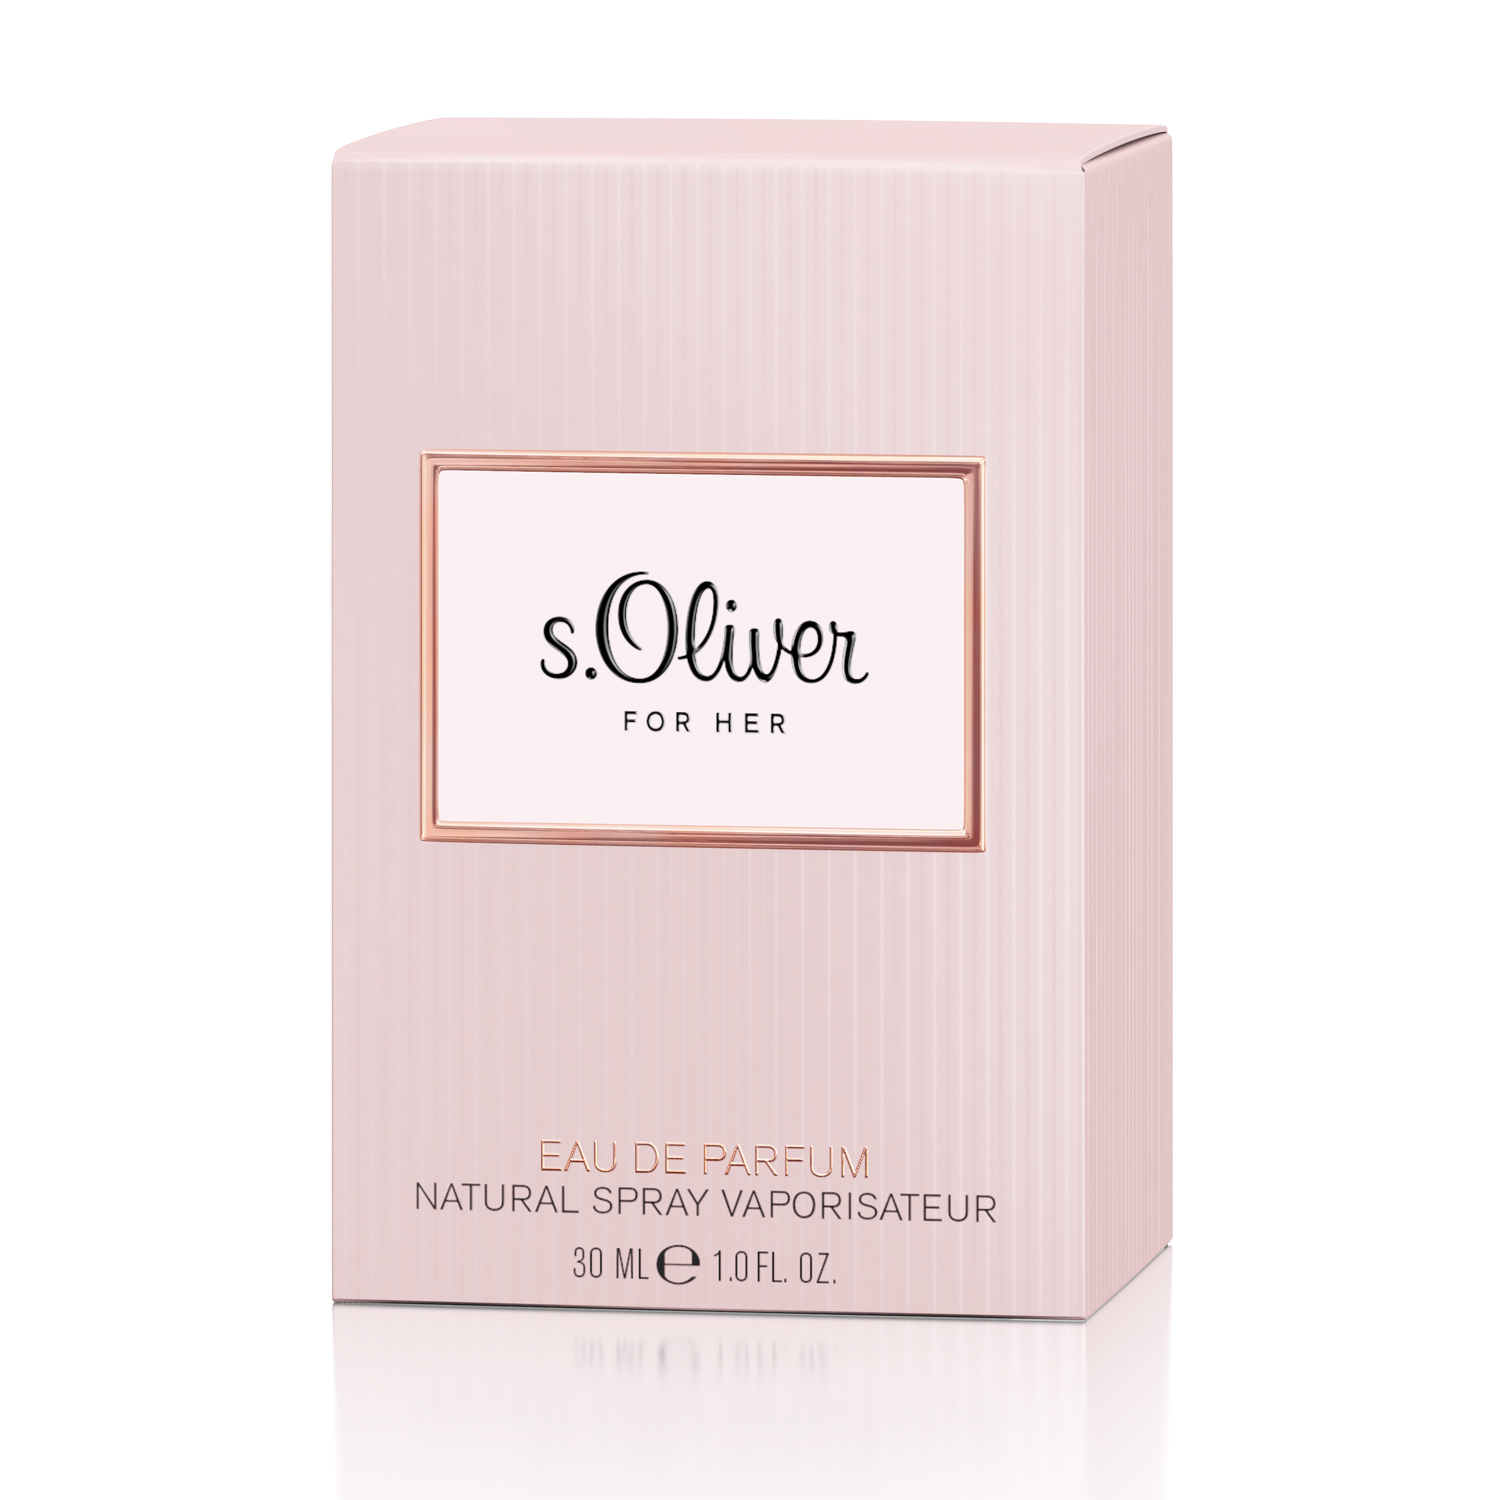 S.Oliver for Her Eau de Parfum 30ml